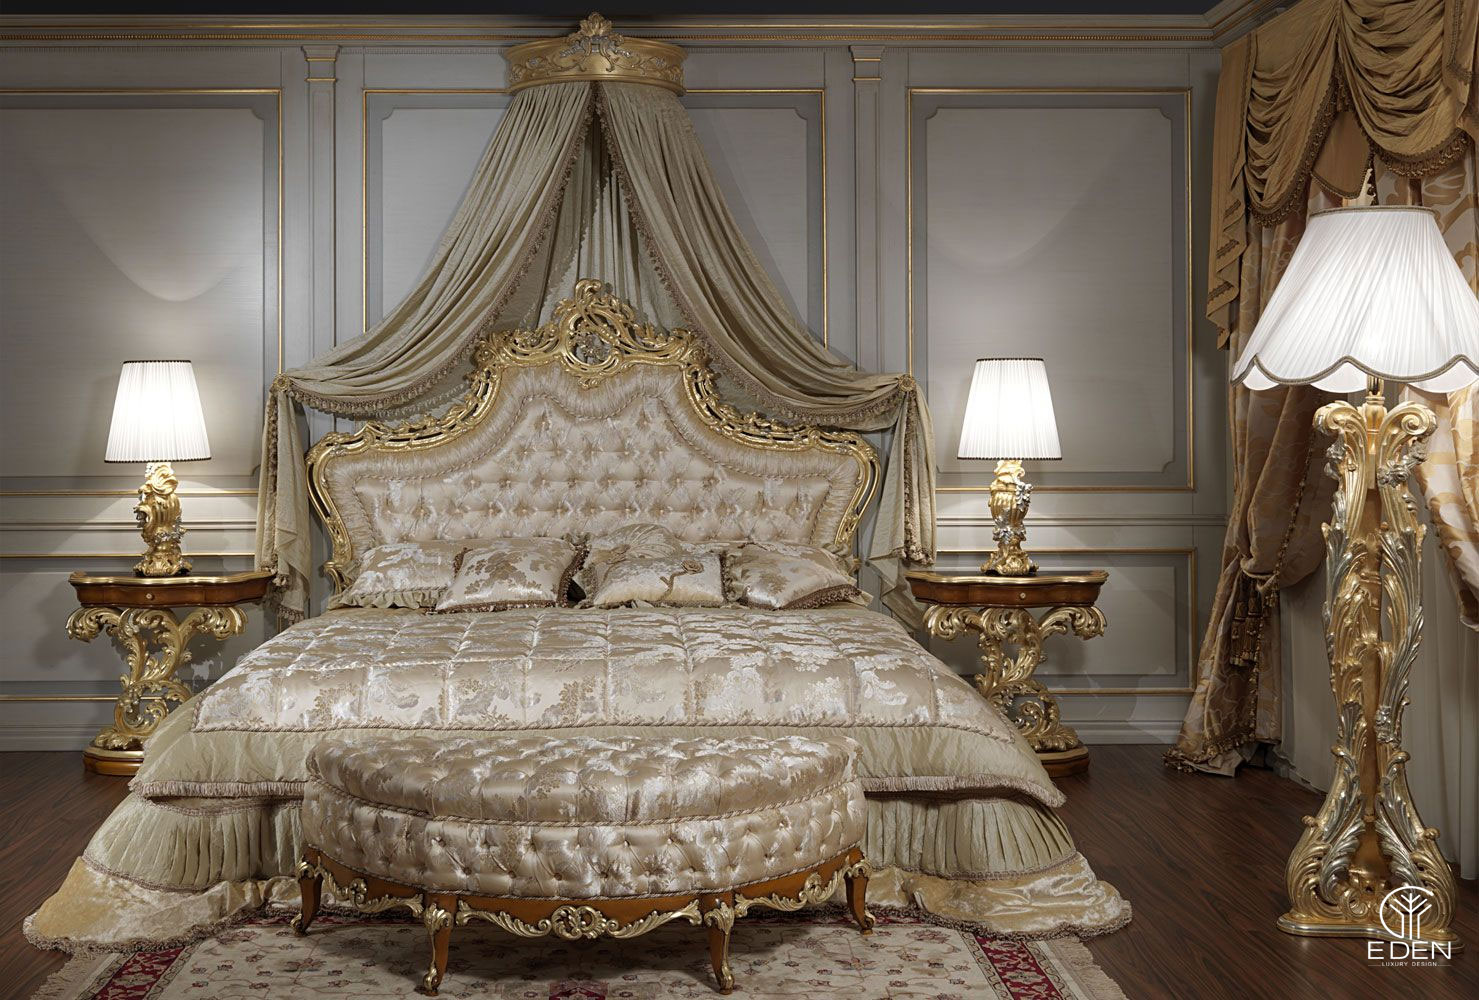 Chọn kiểu giường có kích thước phù hợp với căn phòng